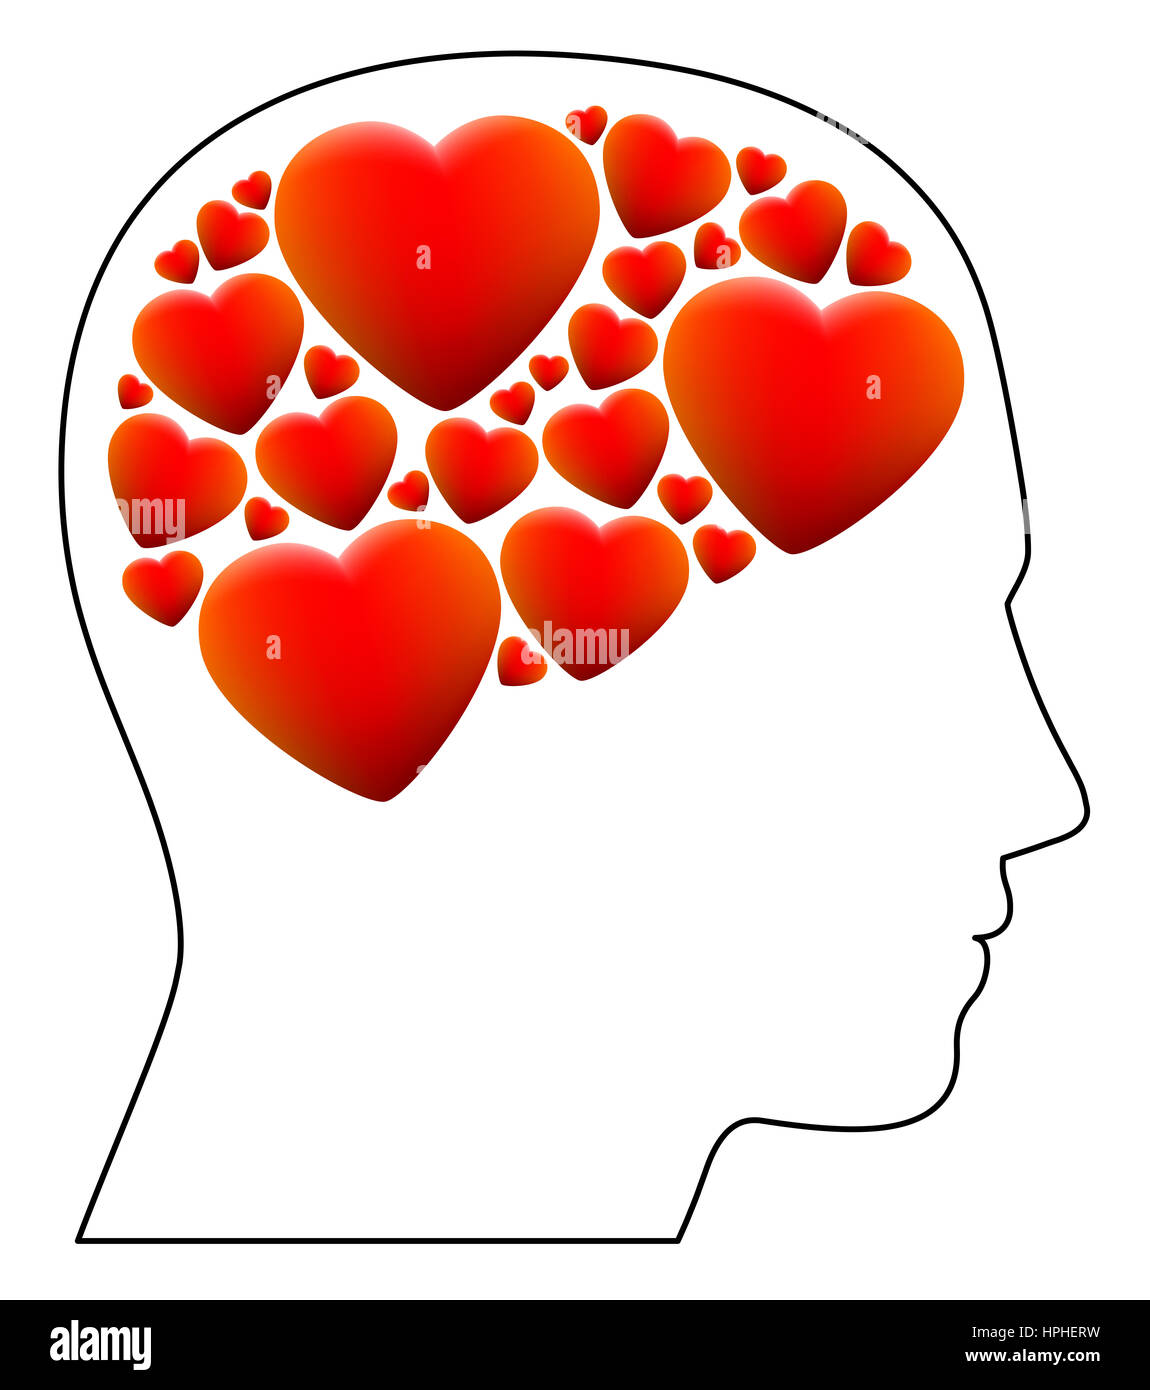 Verliebt - symbolisiert durch einen Kopf voller Herzen statt Gehirn - Abbildung auf weißem Hintergrund. Stockfoto